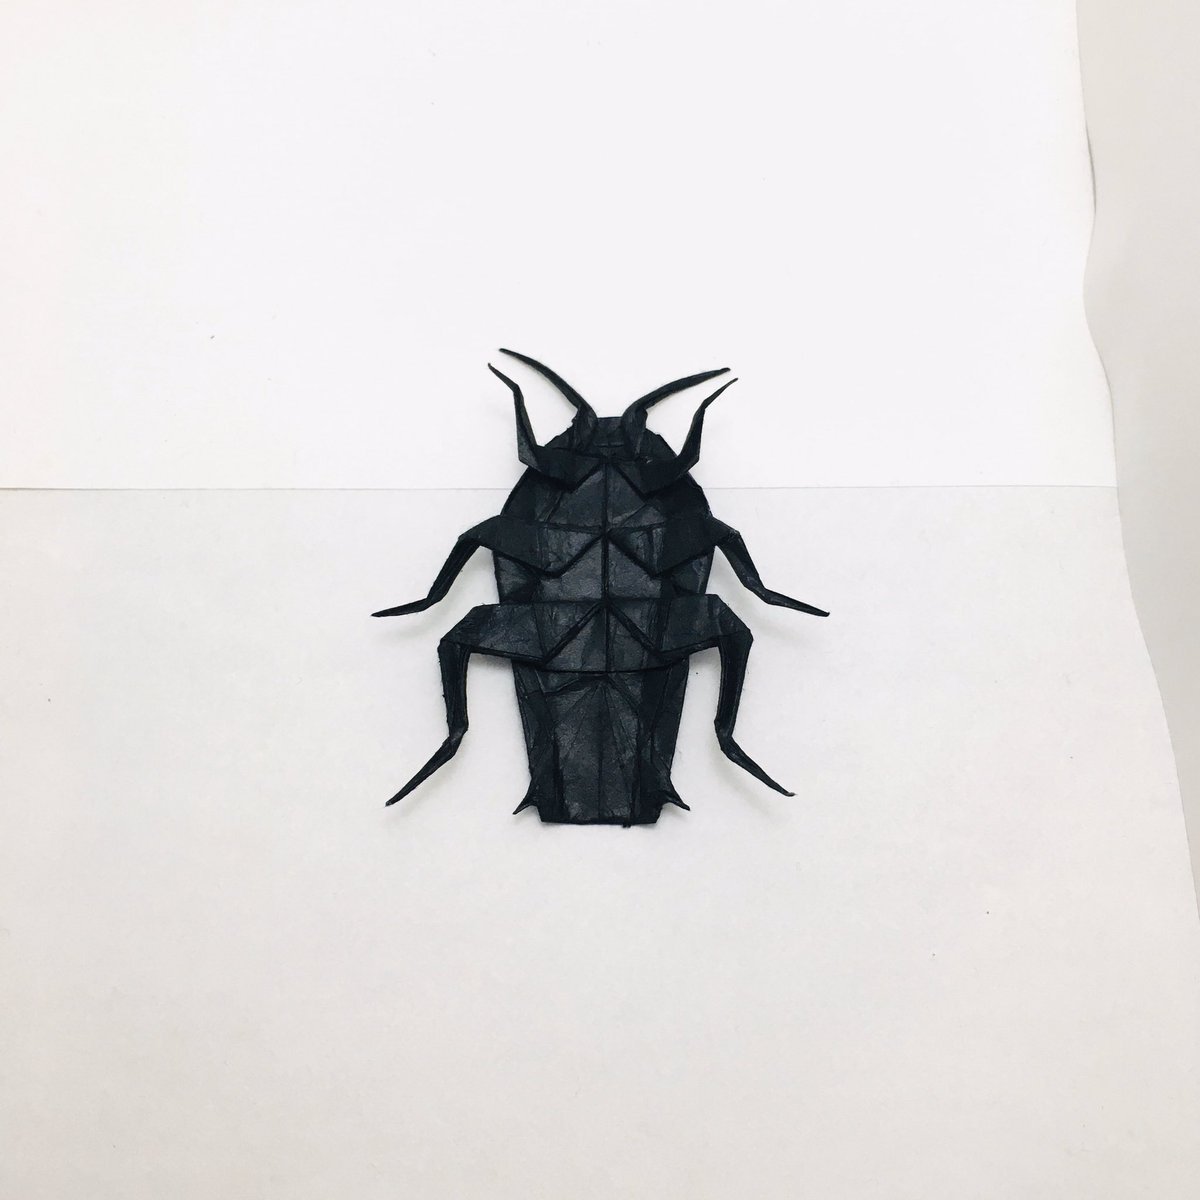 すぎぽよ Na Twitteru 勝田恭平さんのゴキブリ Cockroach Designed By Kyohei Katsuta cm雁皮紙 水彩絵の具 完成後塗装 より From One Sheet Of Square Paper ルリゴキブリテイスト 脚とか裏側は何色なのか分からなかったので 黒のままにしときました